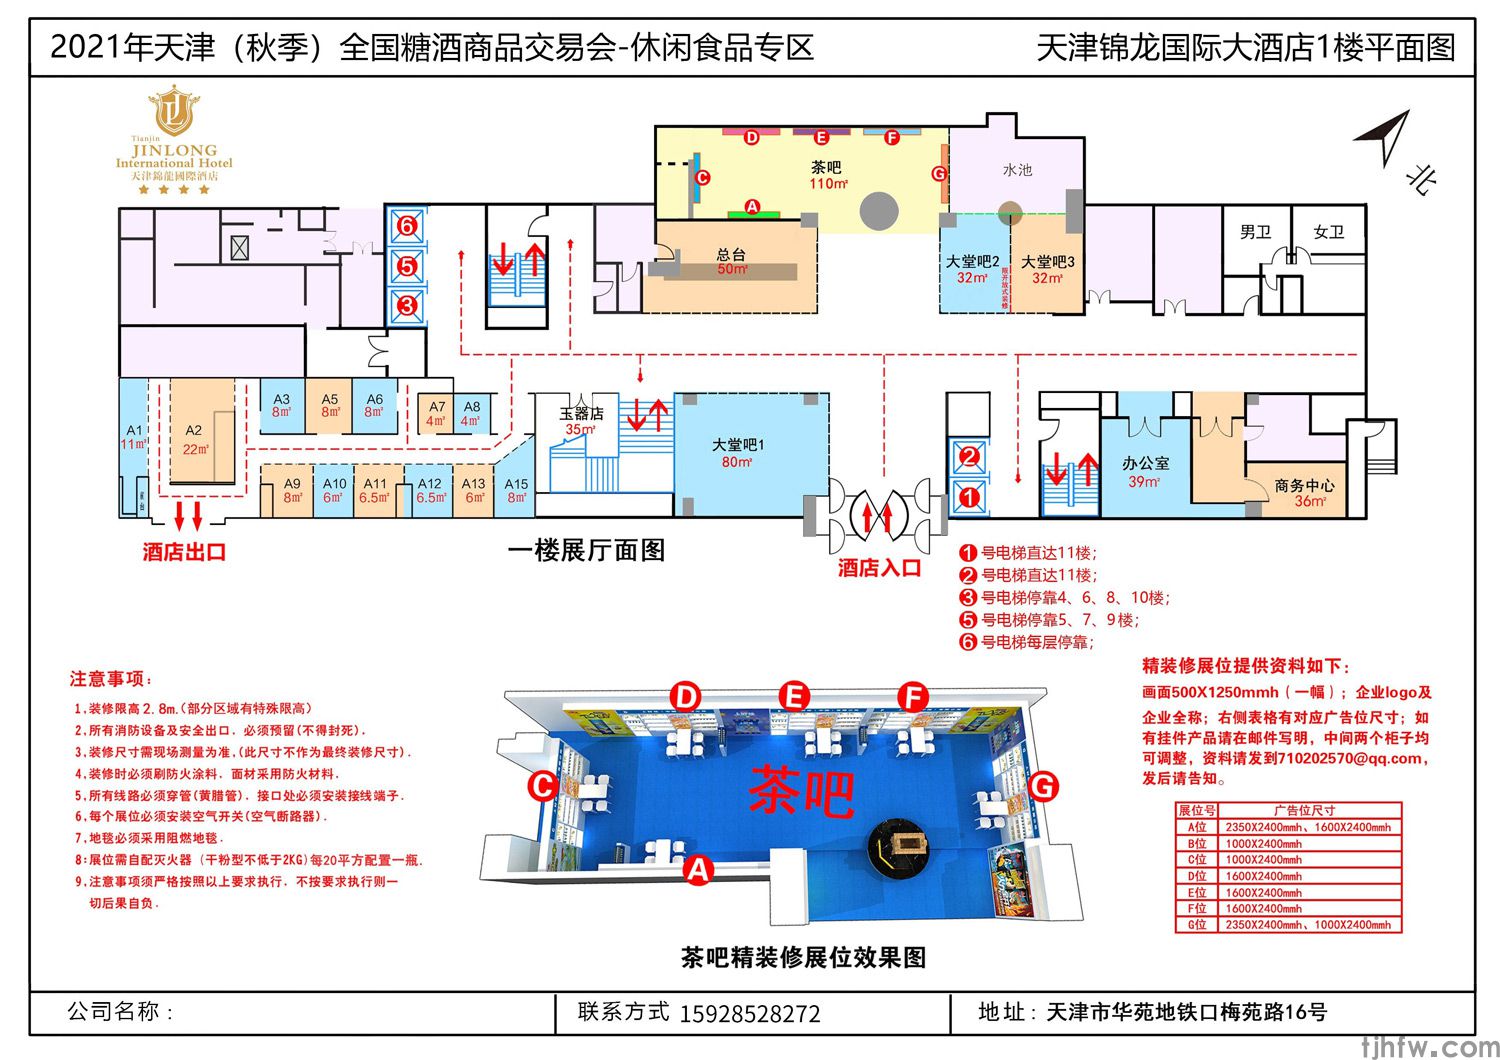 锦龙国际酒店 天津秋季糖酒会休闲食品专区(图2)